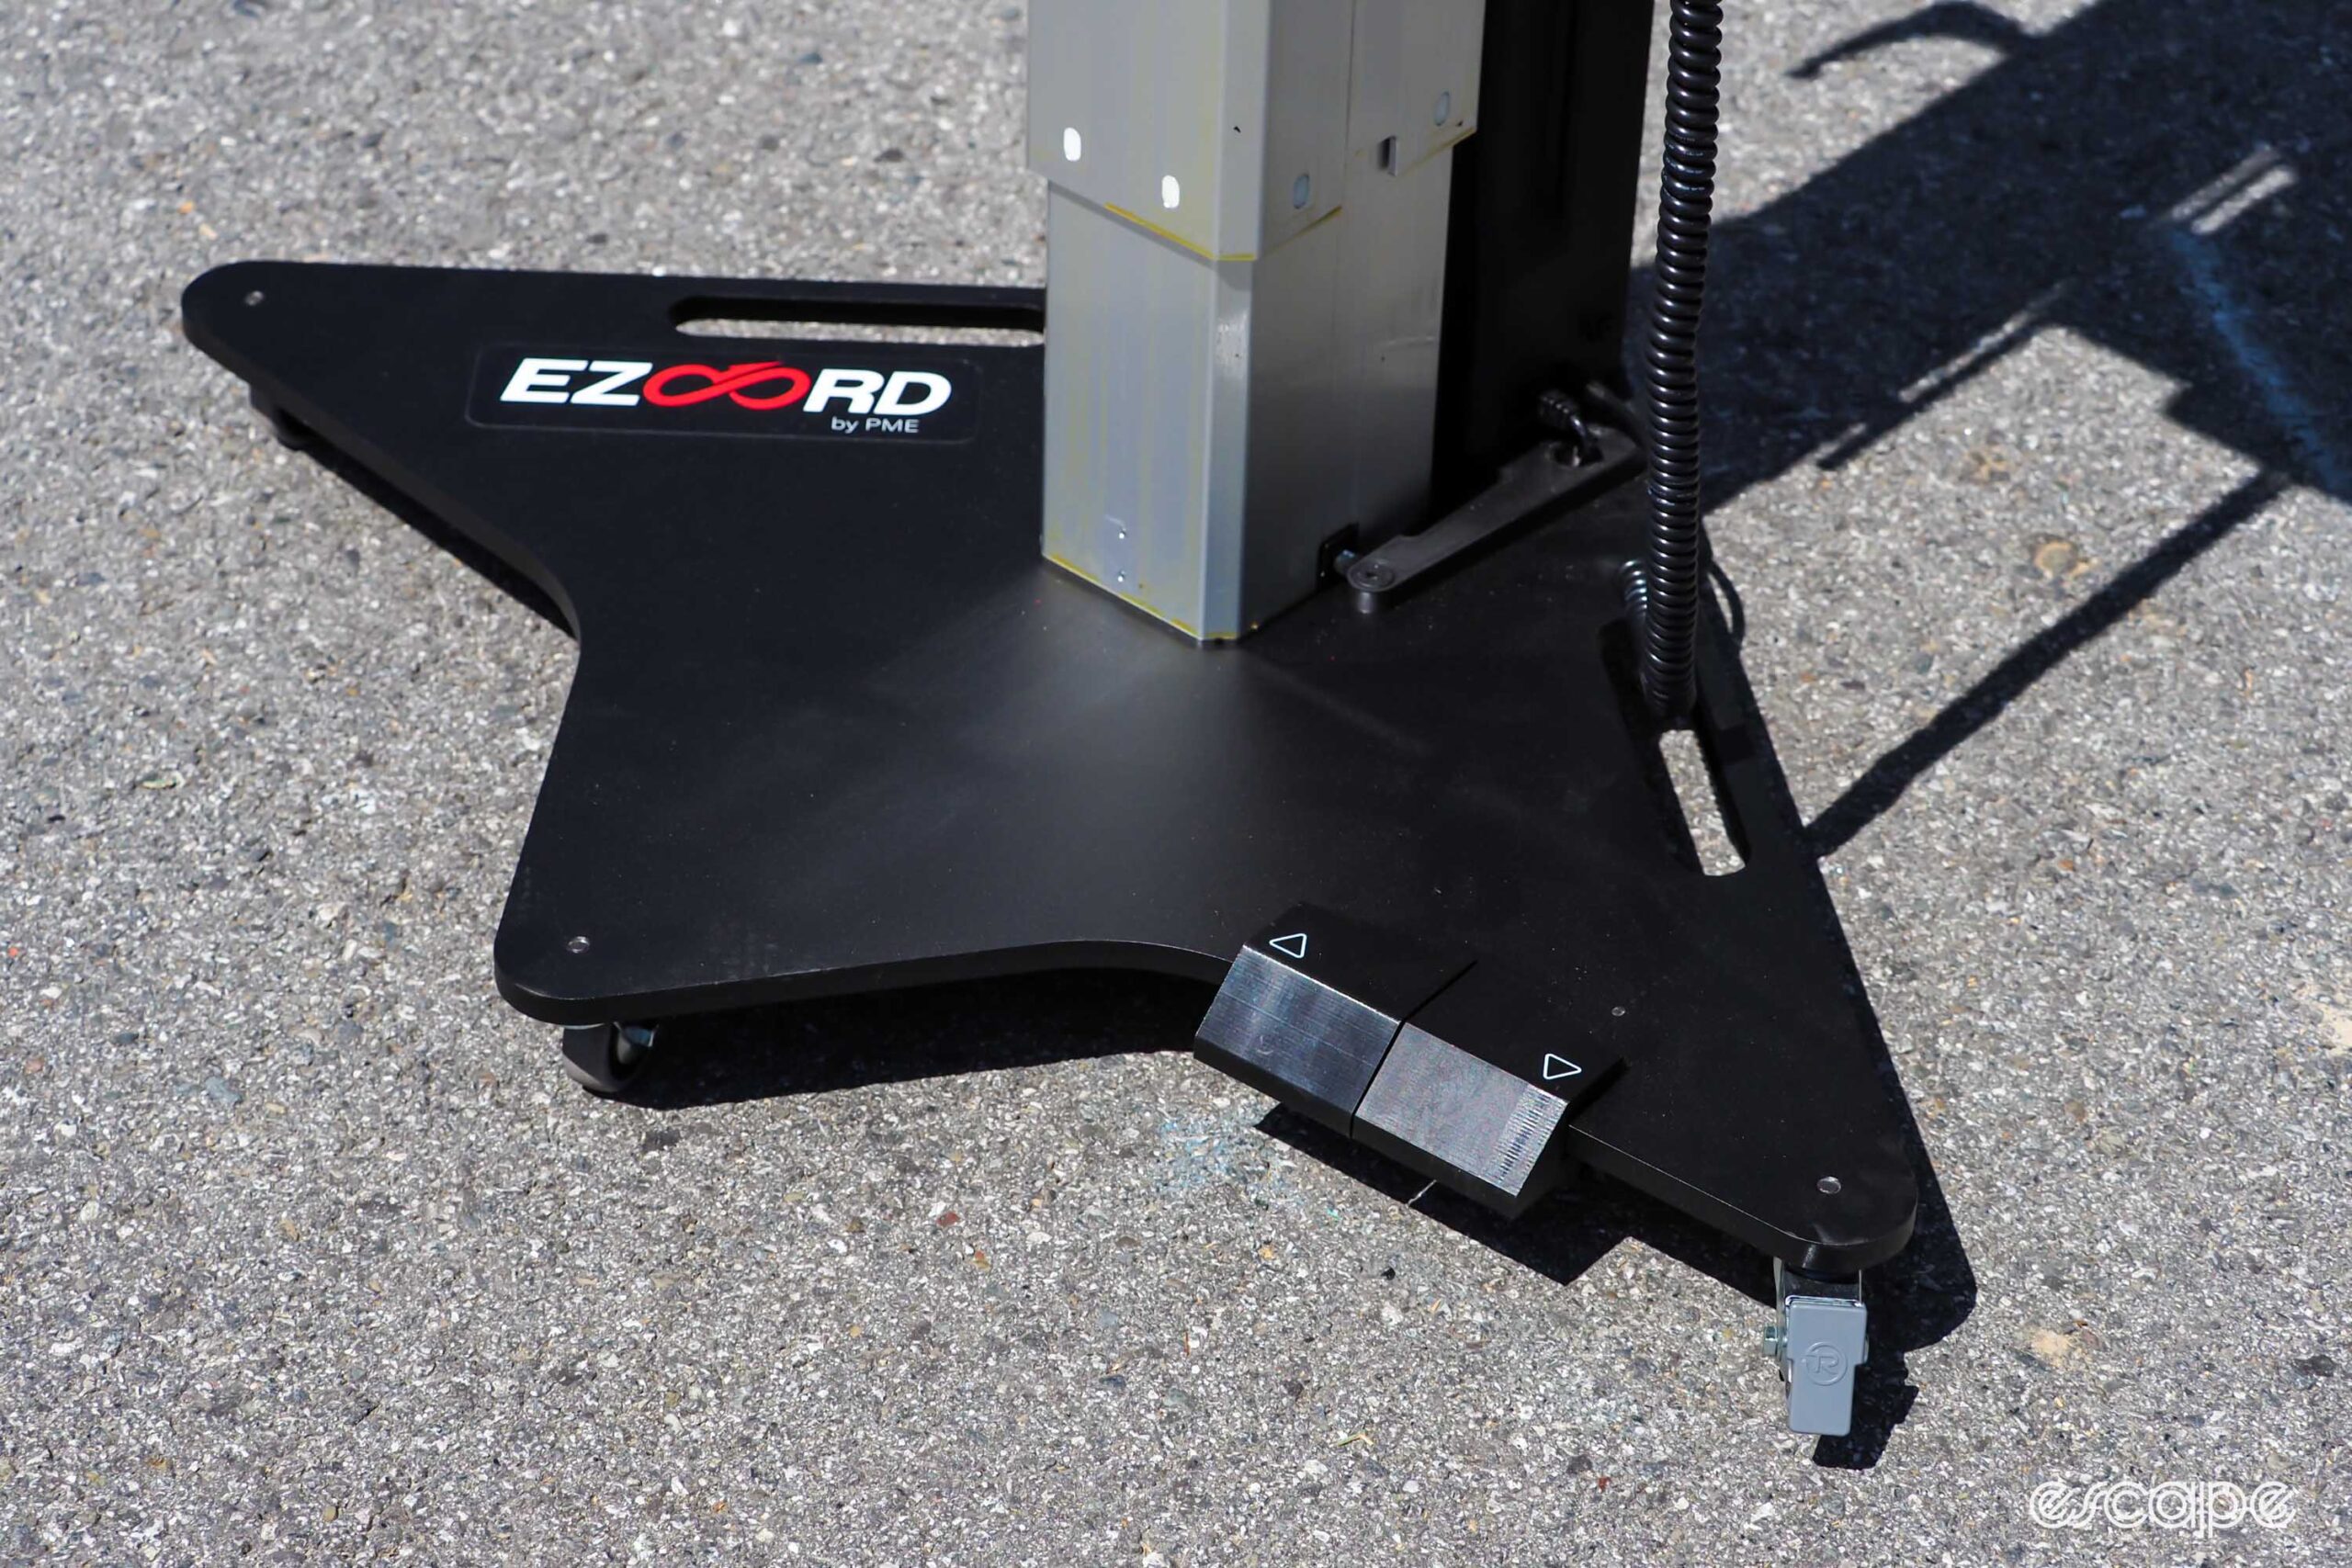 Ezoord repair stand base